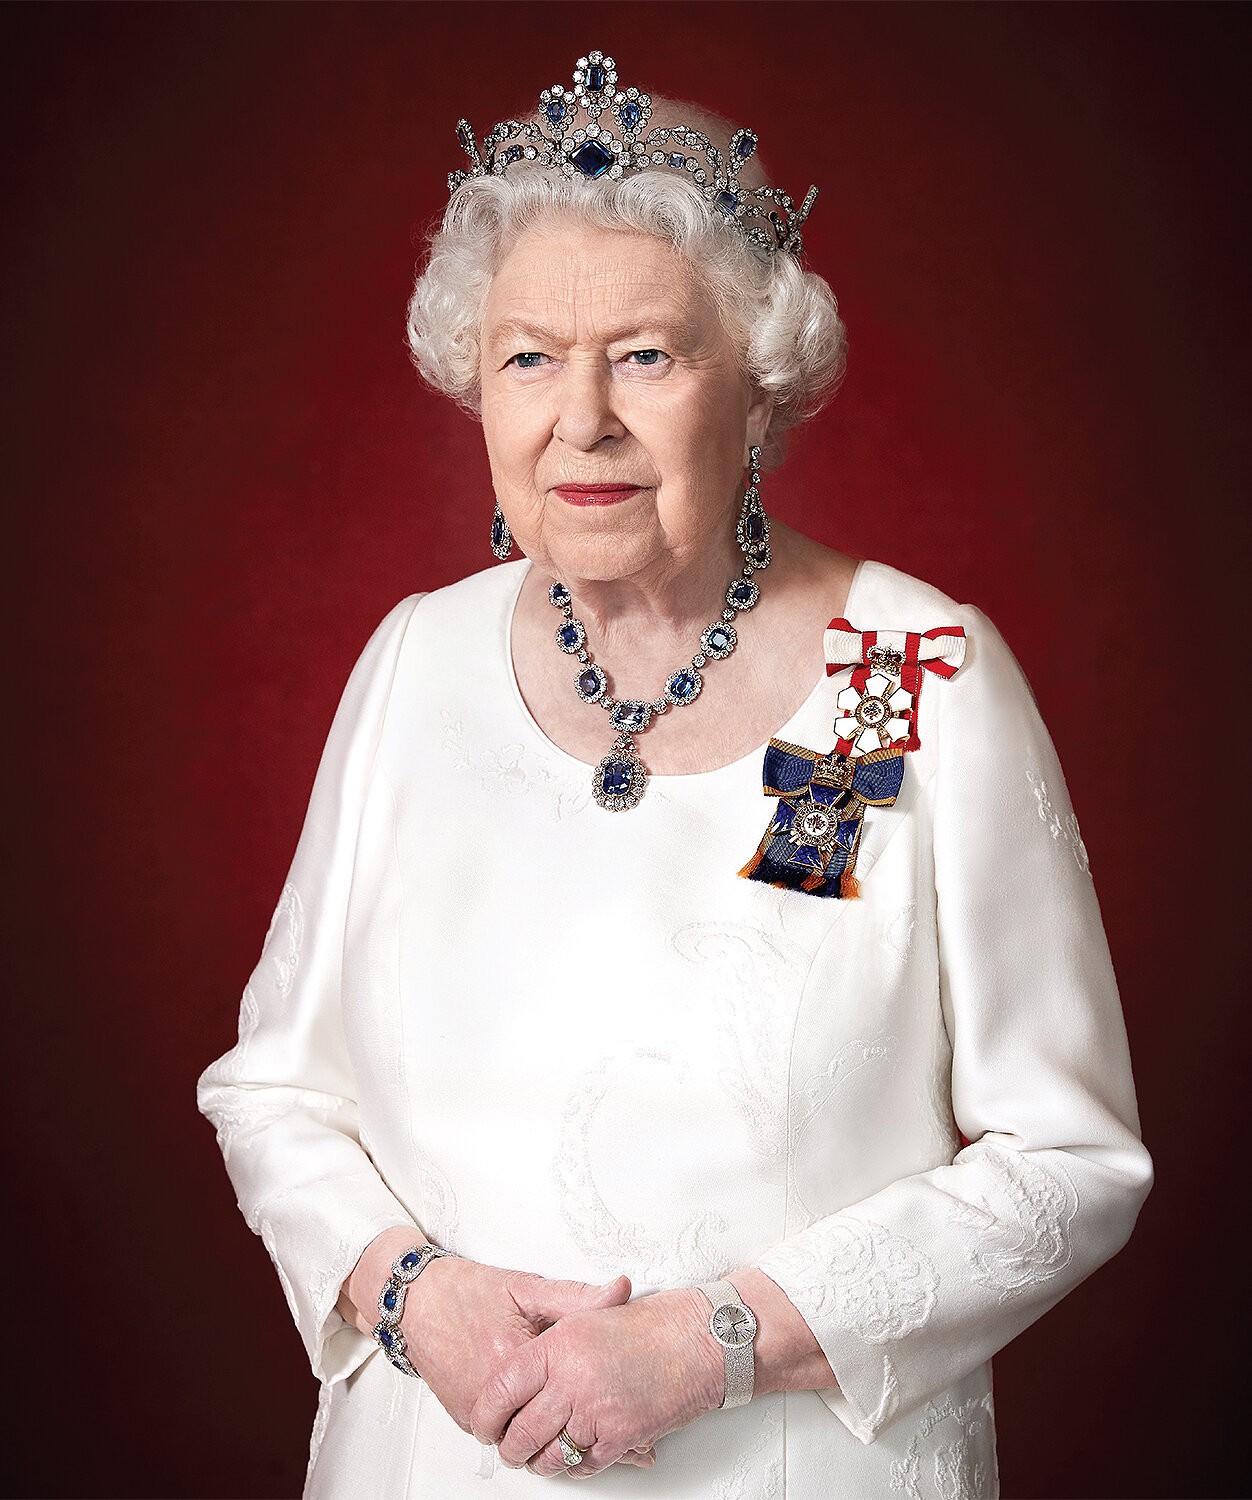 Retrato oficial de la reina de Canadá